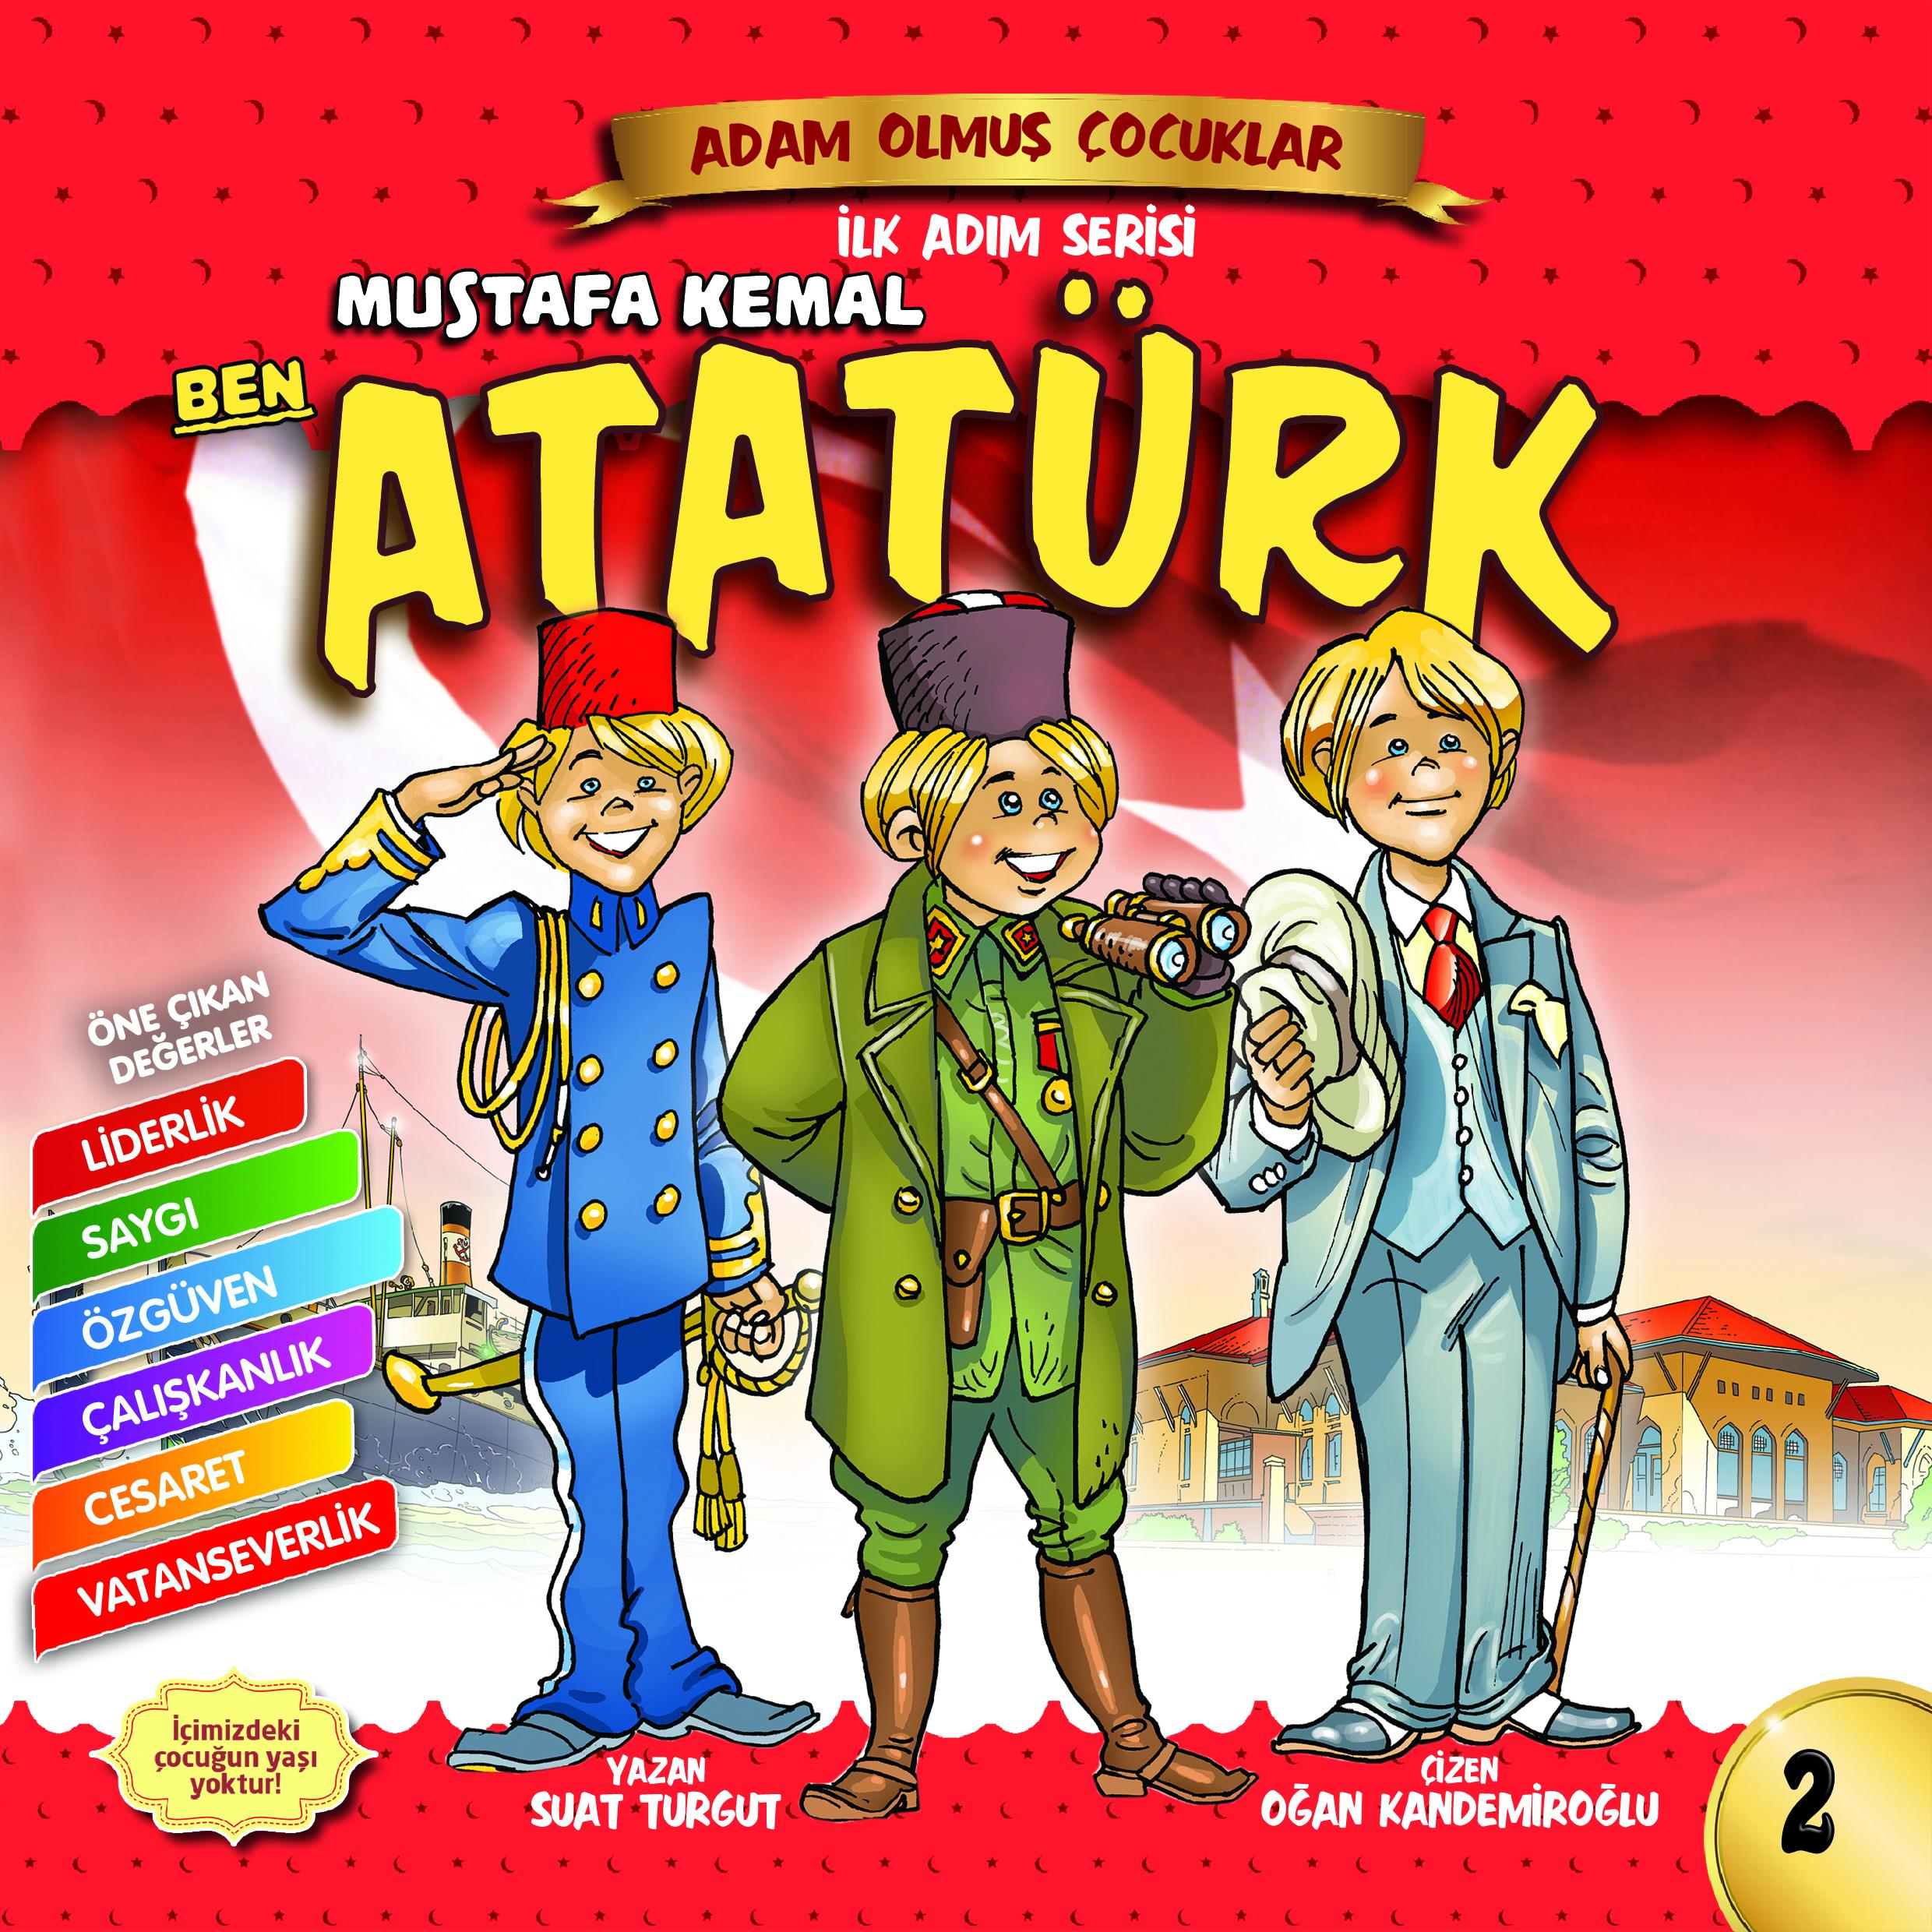 Ben Mustafa Kemal Atatürk-Adam Olmuş Çocuklar